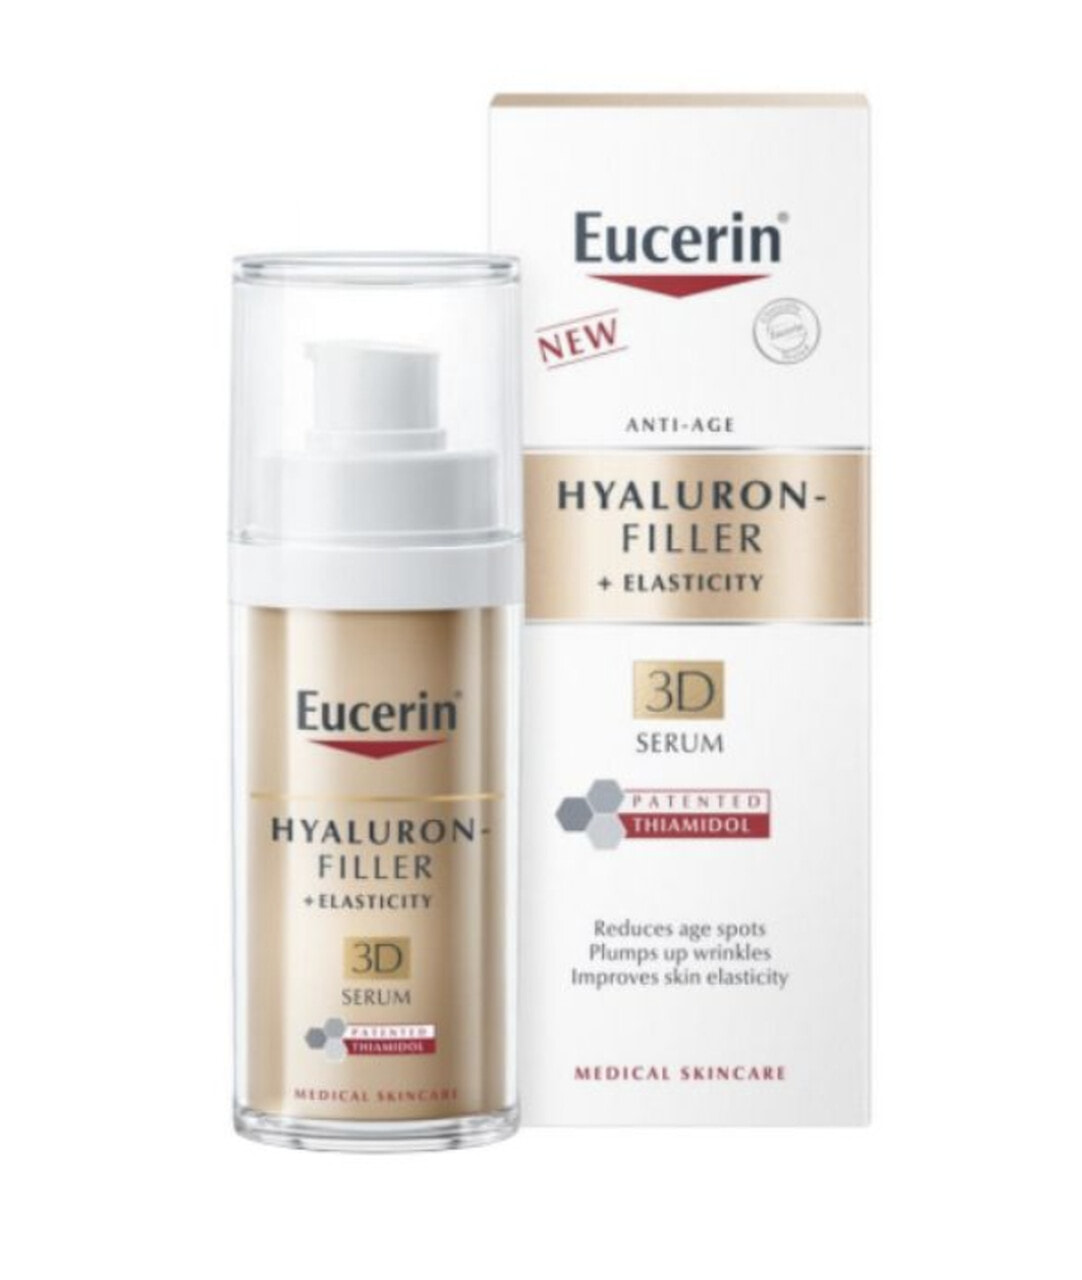 Eucerin Hyaluron-Filler + Elasticity 3D Serum Сыворотка для зрелой кожи, против морщин, пигментных пятен и потери упругости 30 мл